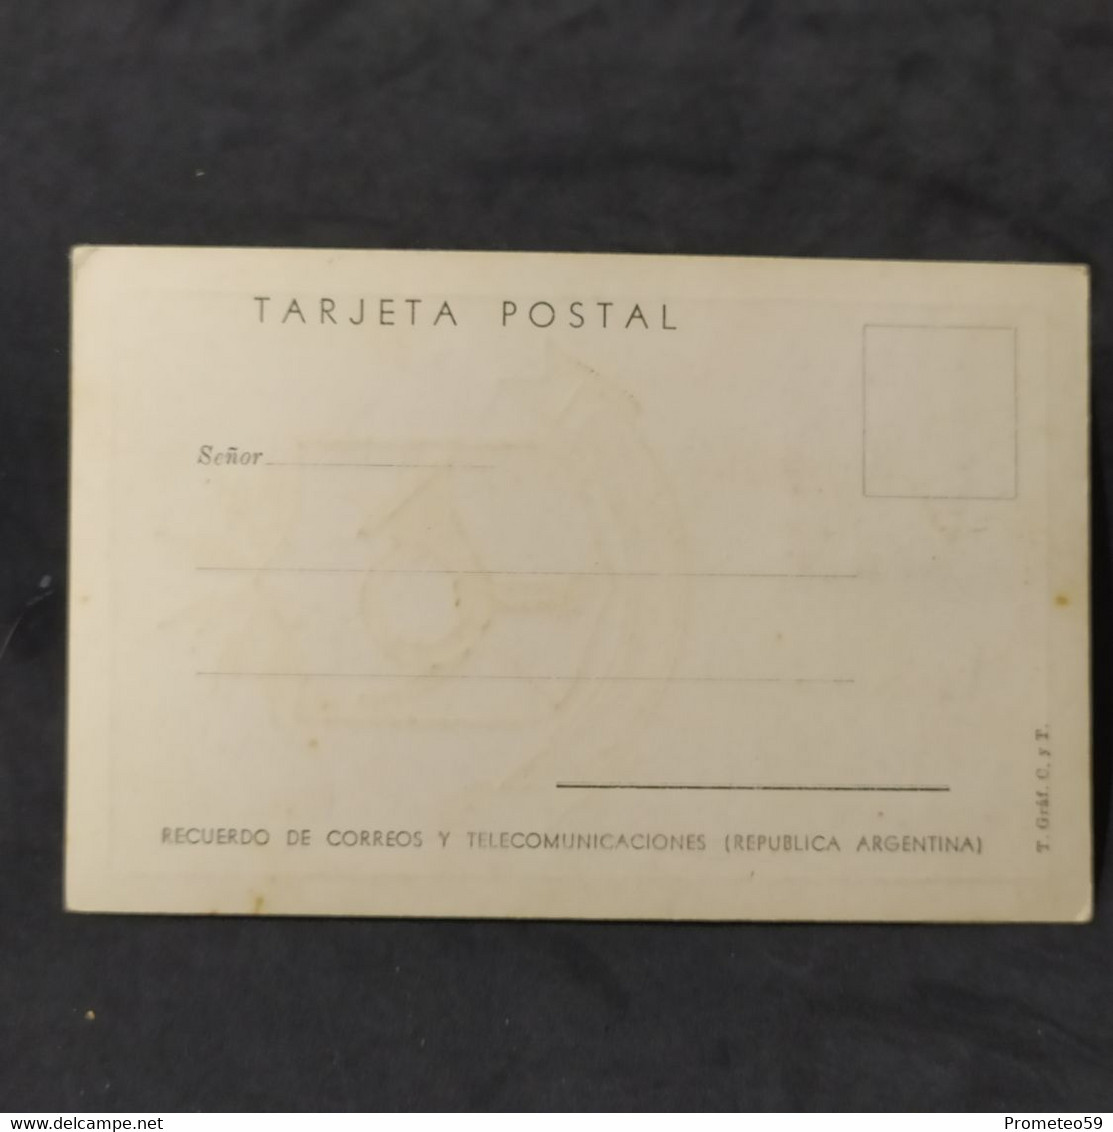 Día De Emisión - Nueva Provincia De La Pampa – 1/9/1956 – Argentina - Postzegelboekjes